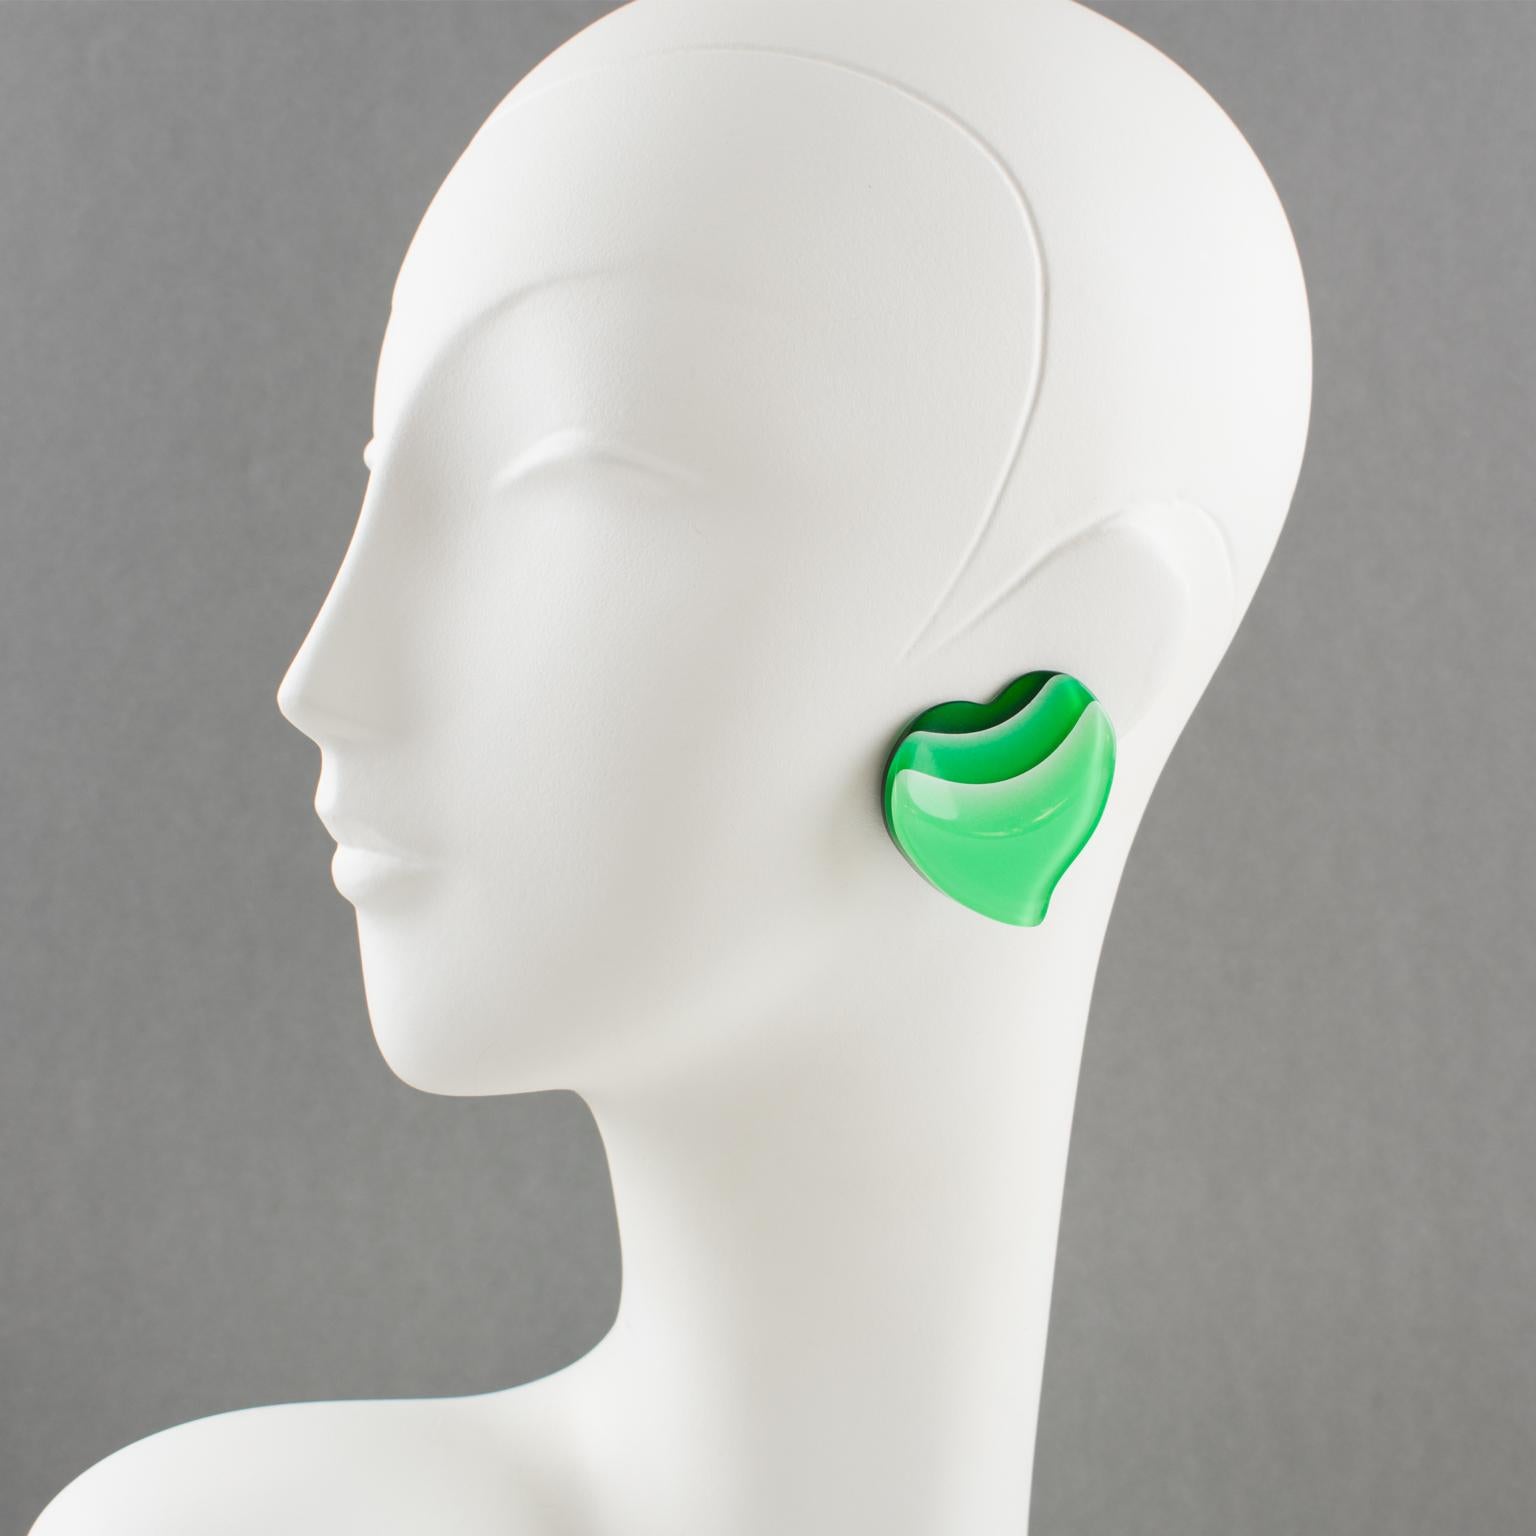 Hübsche übergroße Lucite-Ohrringe aus den 1960er Jahren. Mit einer großen geschnitzten Herzform mit Laminierung. Transparente waldgrüne Farbe Hintergrund schattiert, um grünes Gras und aqua-grün hellen Farben. Es gibt keine sichtbare